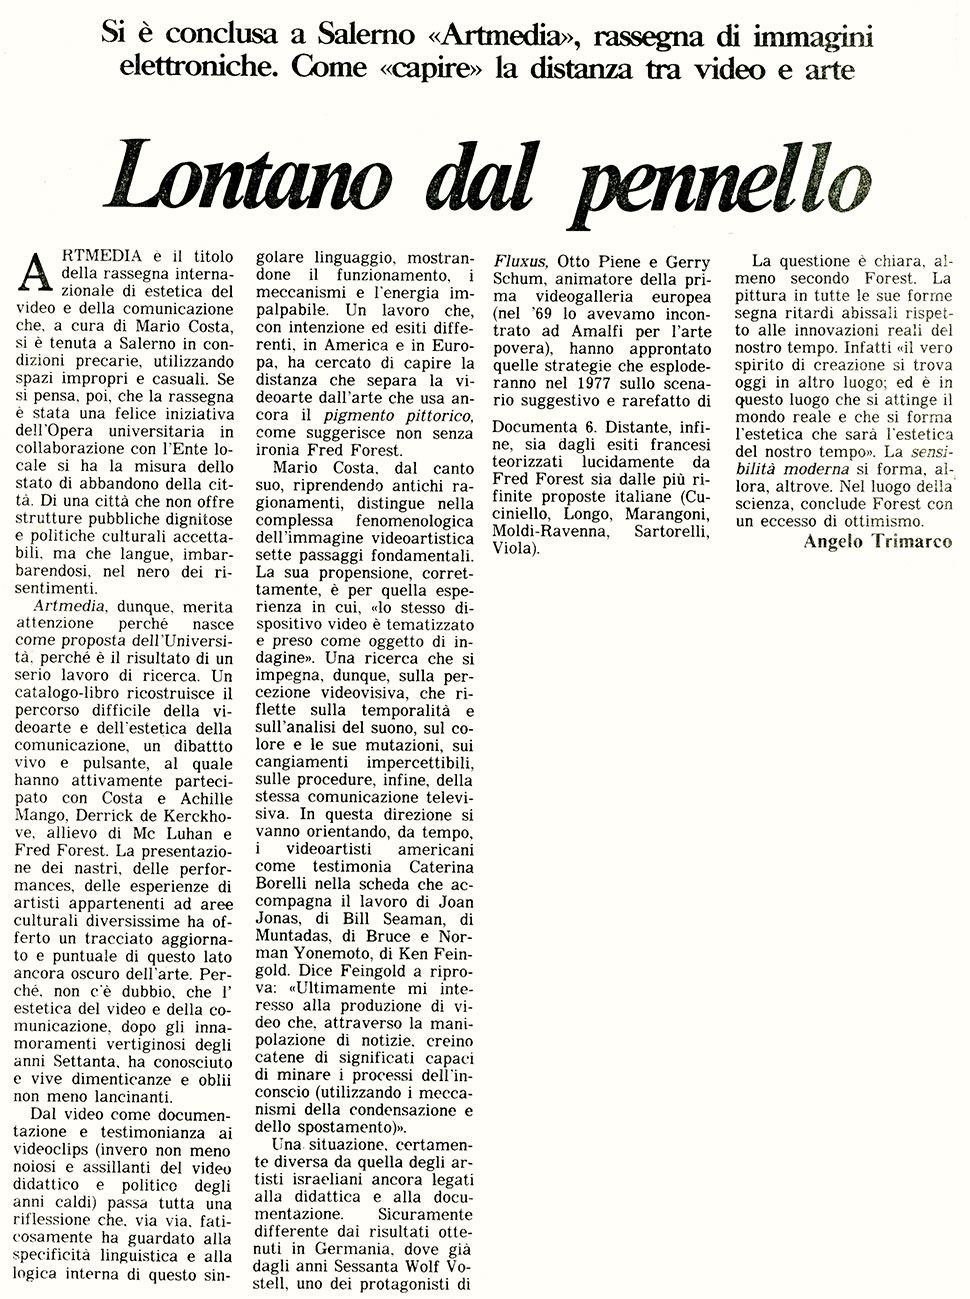 08-06-1985 Il Mattino - Artmedia